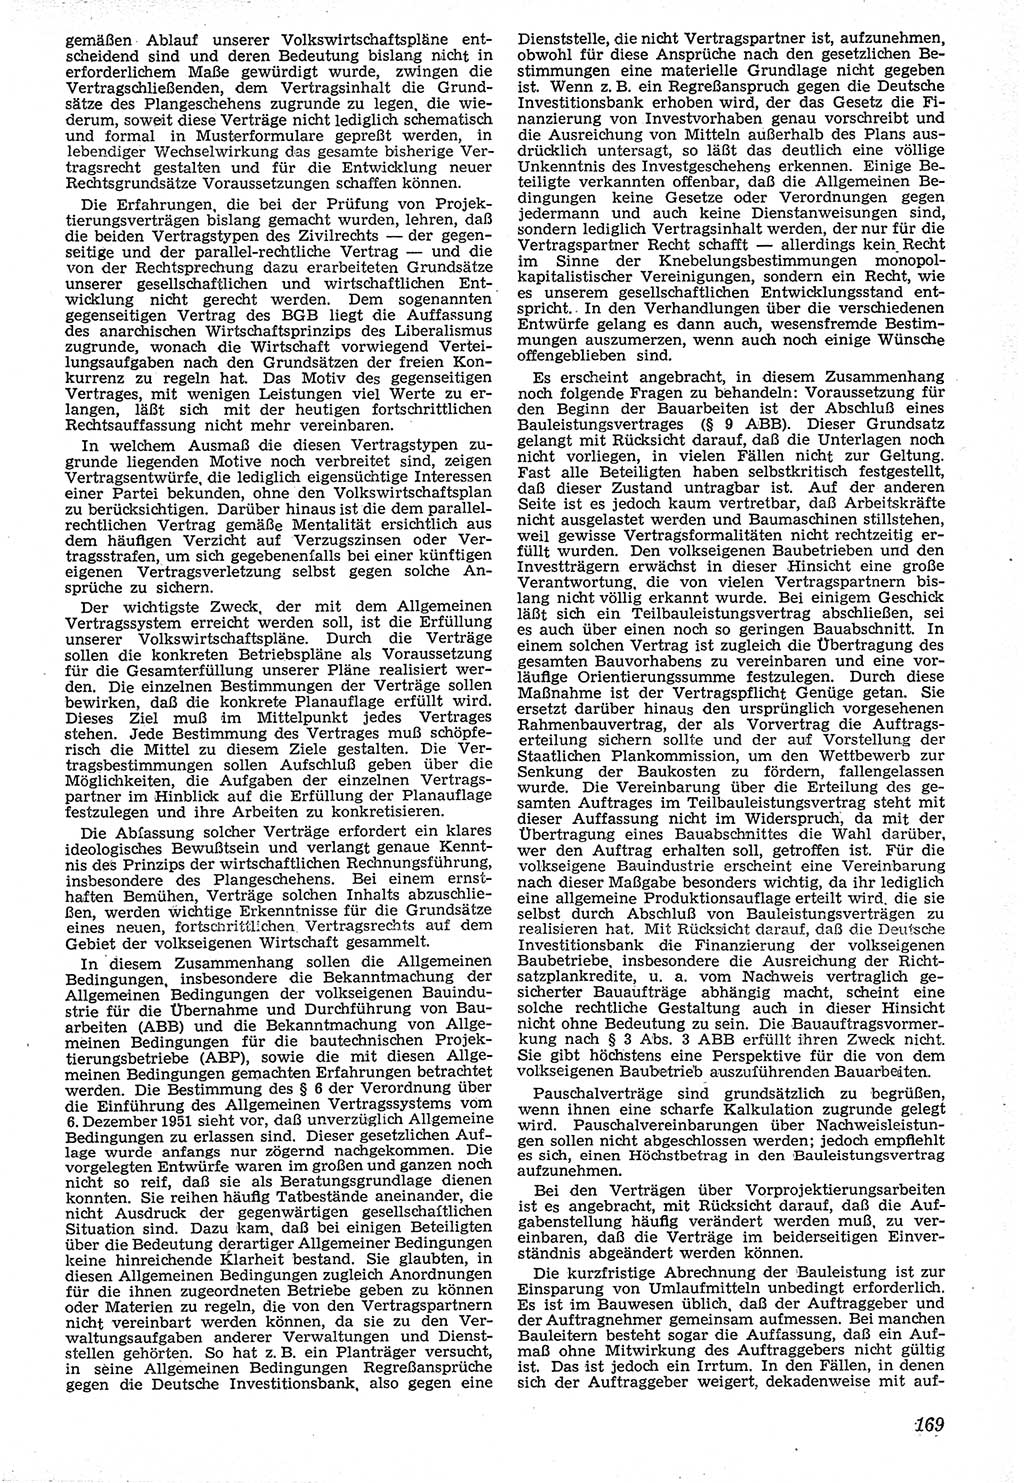 Neue Justiz (NJ), Zeitschrift für Recht und Rechtswissenschaft [Deutsche Demokratische Republik (DDR)], 7. Jahrgang 1953, Seite 169 (NJ DDR 1953, S. 169)